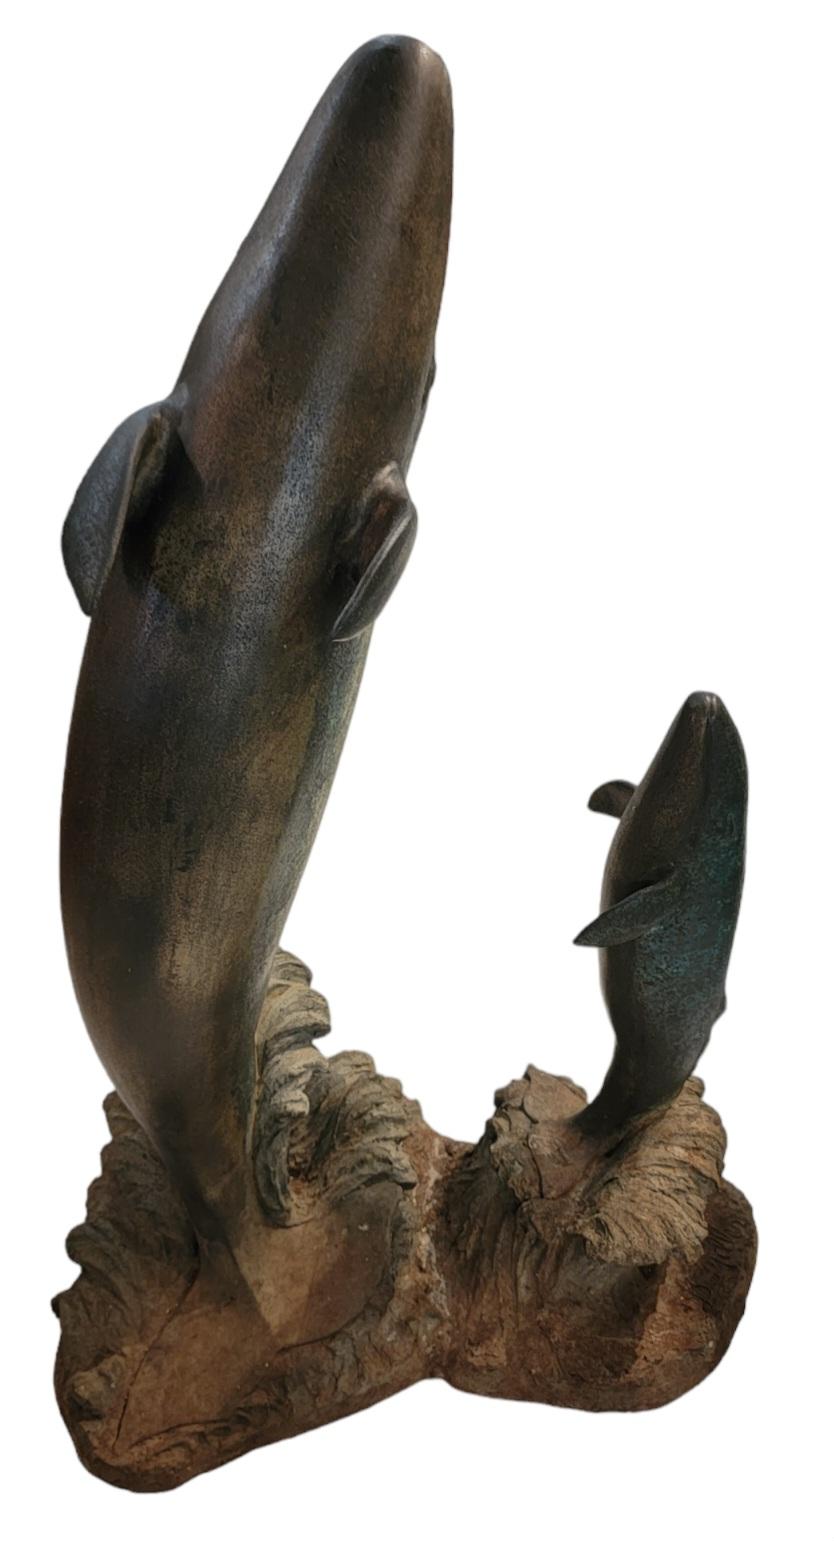 Signierte Bronze Double Whale Statue Skulptur. Jeder Wal bricht und zeigt einen Tanz zwischen Eltern und Kind. Ein schöner Tanz des Lebens. Maße: ca. 30h x 15d x 21w

Die Signatur befindet sich am Sockel der Skulptur.
